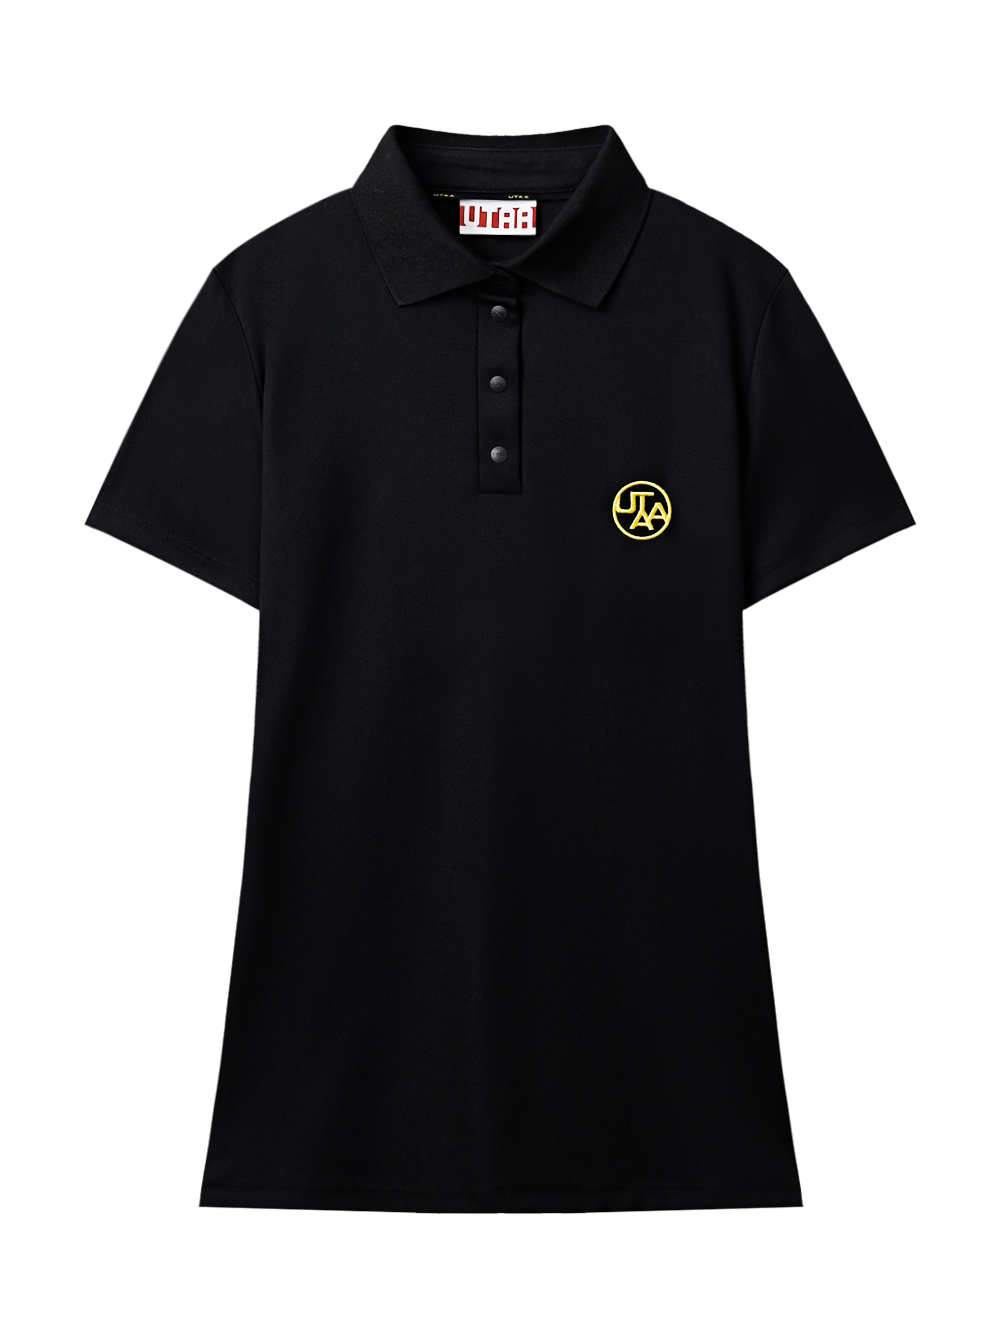 UTAA Plain Color Symbol PK T-shirt : Women&#039;s Black (UD2TSF173BK)